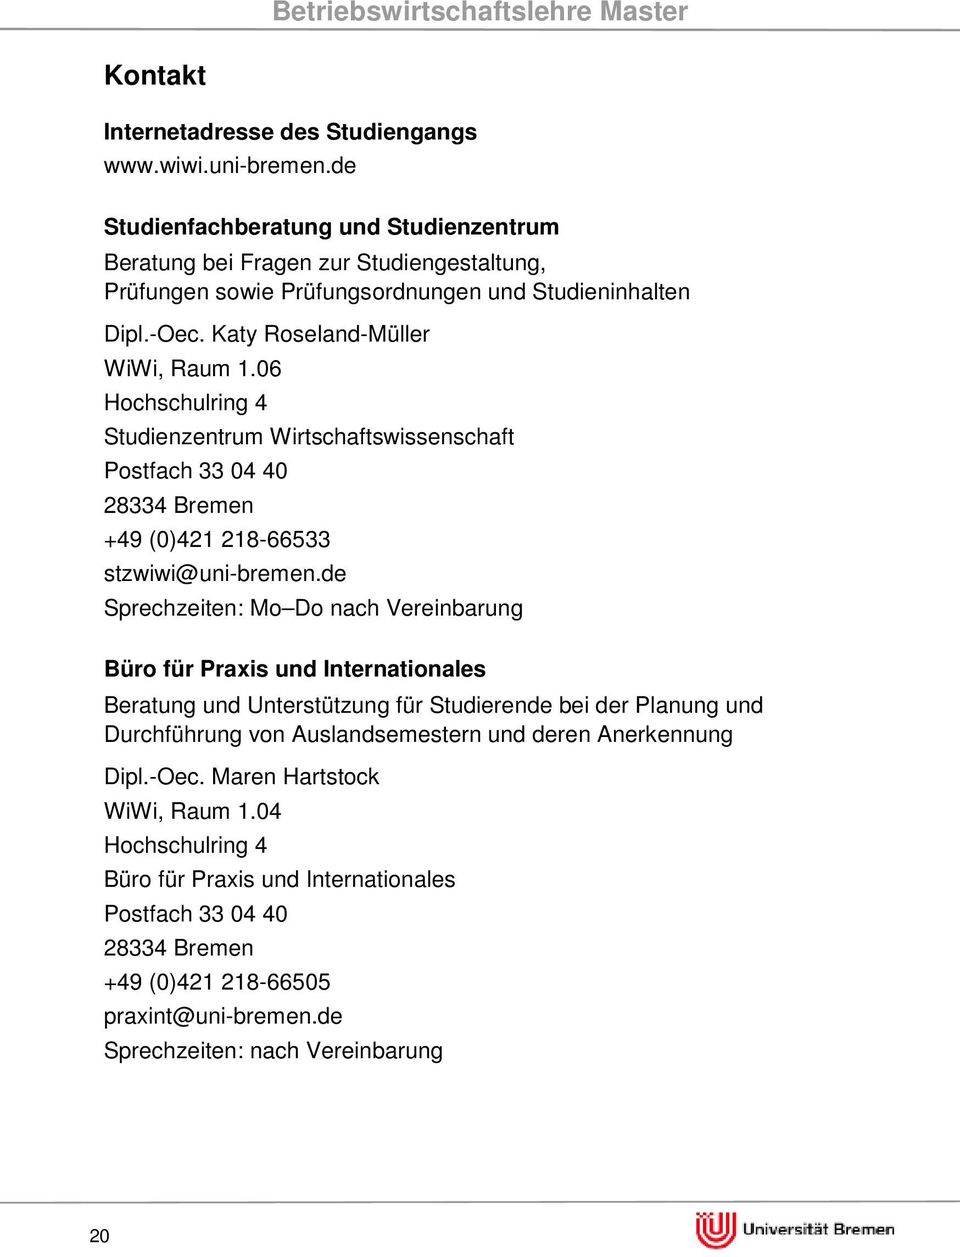 06 Hochschulring 4 Studienzentrum Wirtschaftswissenschaft Postfach 33 04 40 28334 Bremen +49 (0)421 218-66533 stzwiwi@uni-bremen.